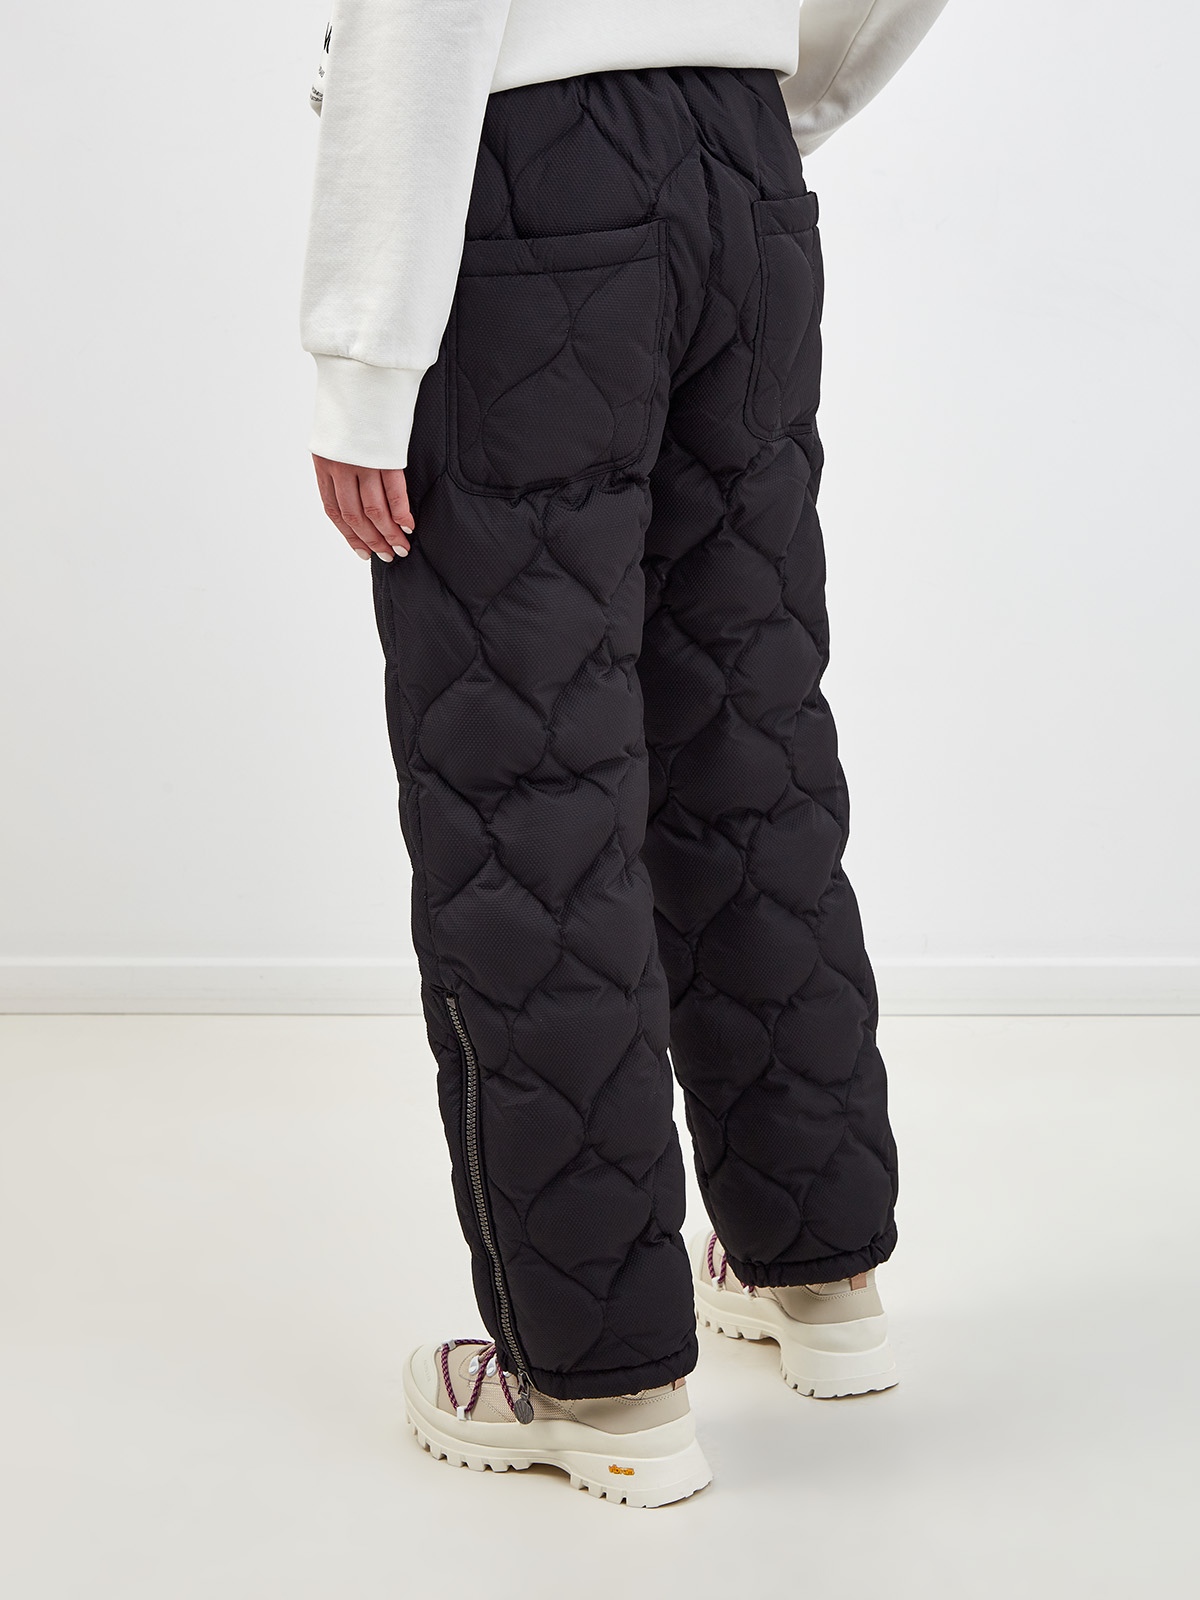 Пуховые стеганые брюки с разрезами на молниях NAUMI, цвет черный, размер S;M;L;XL - фото 4